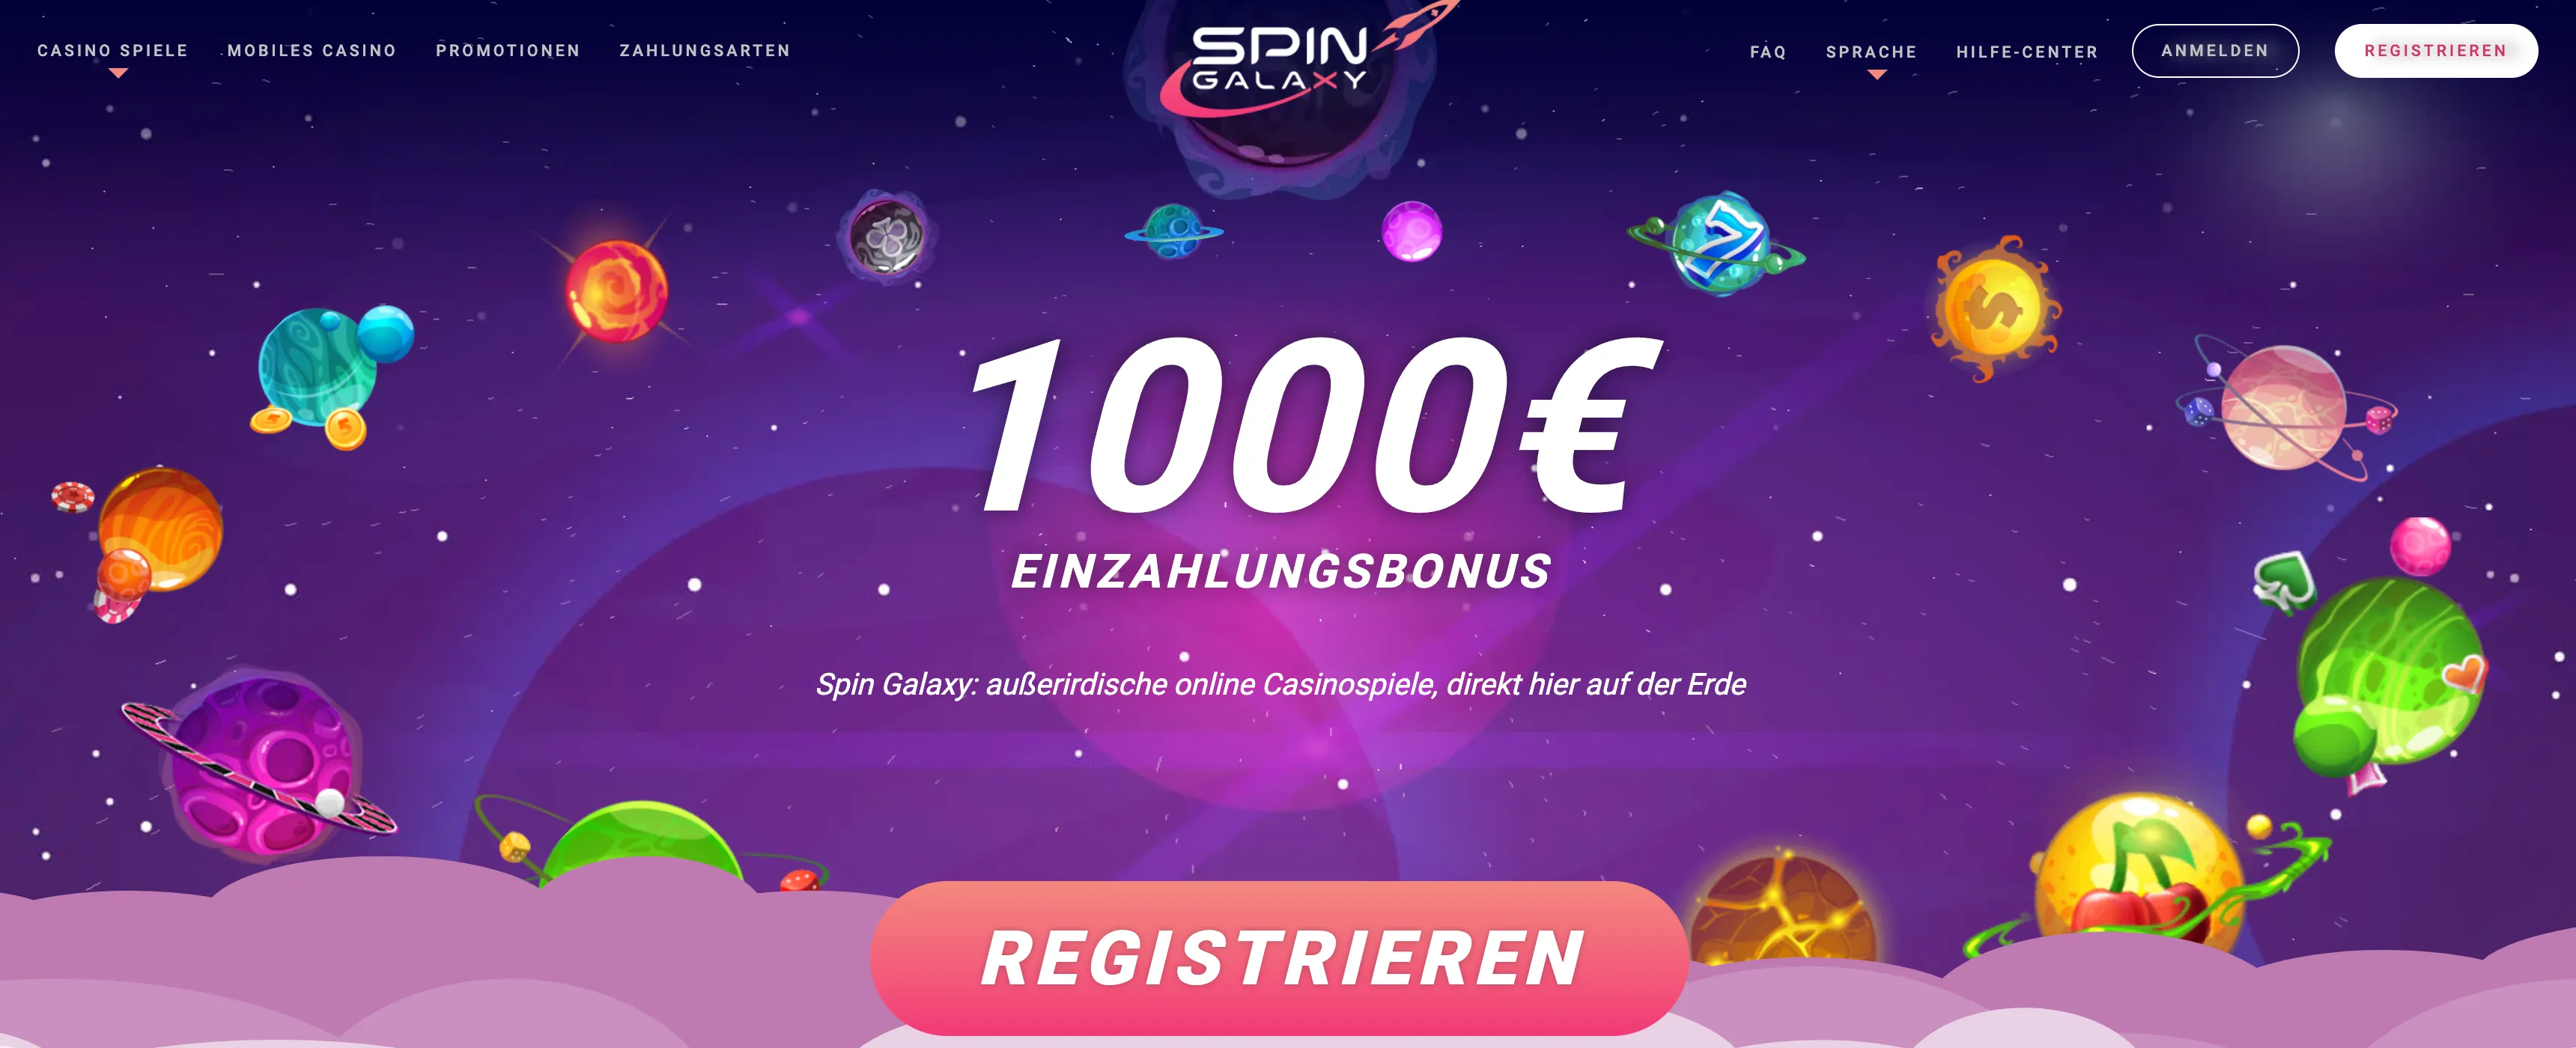 bonus Spin Galaxy casino